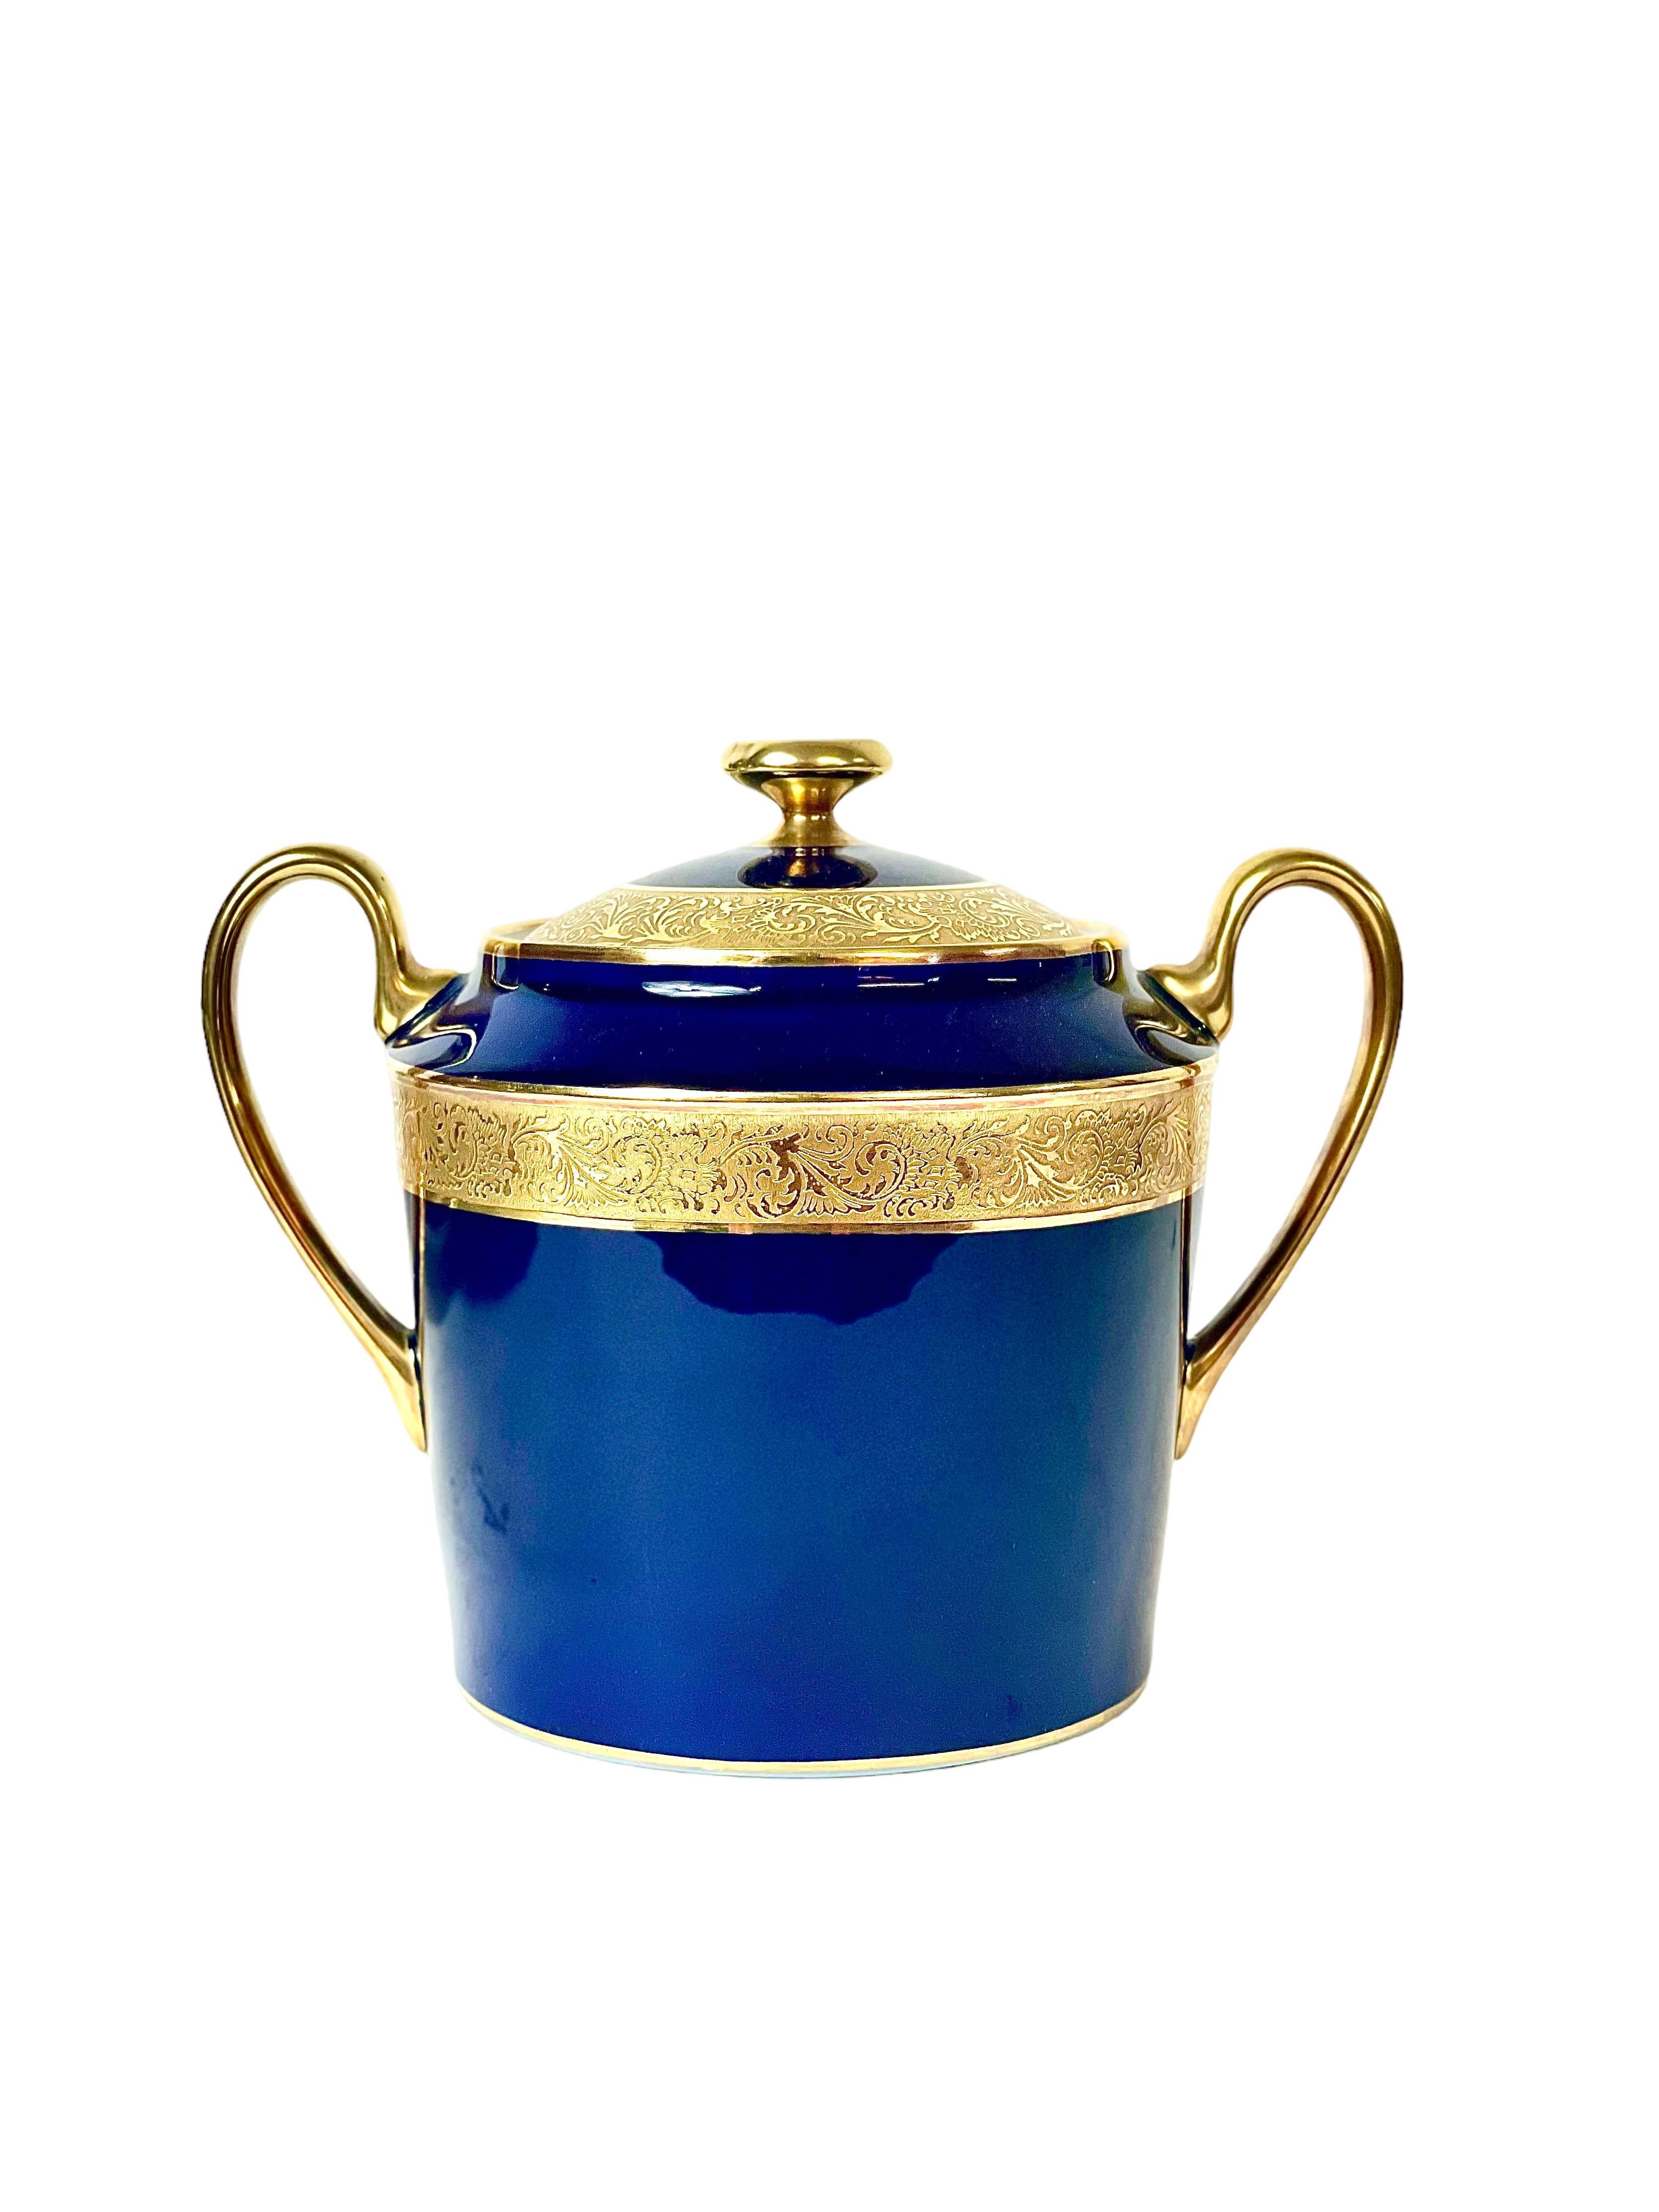 Vernissé Service en porcelaine de Limoges émaillé dans un opulent bleu royal avec bords dorés en vente